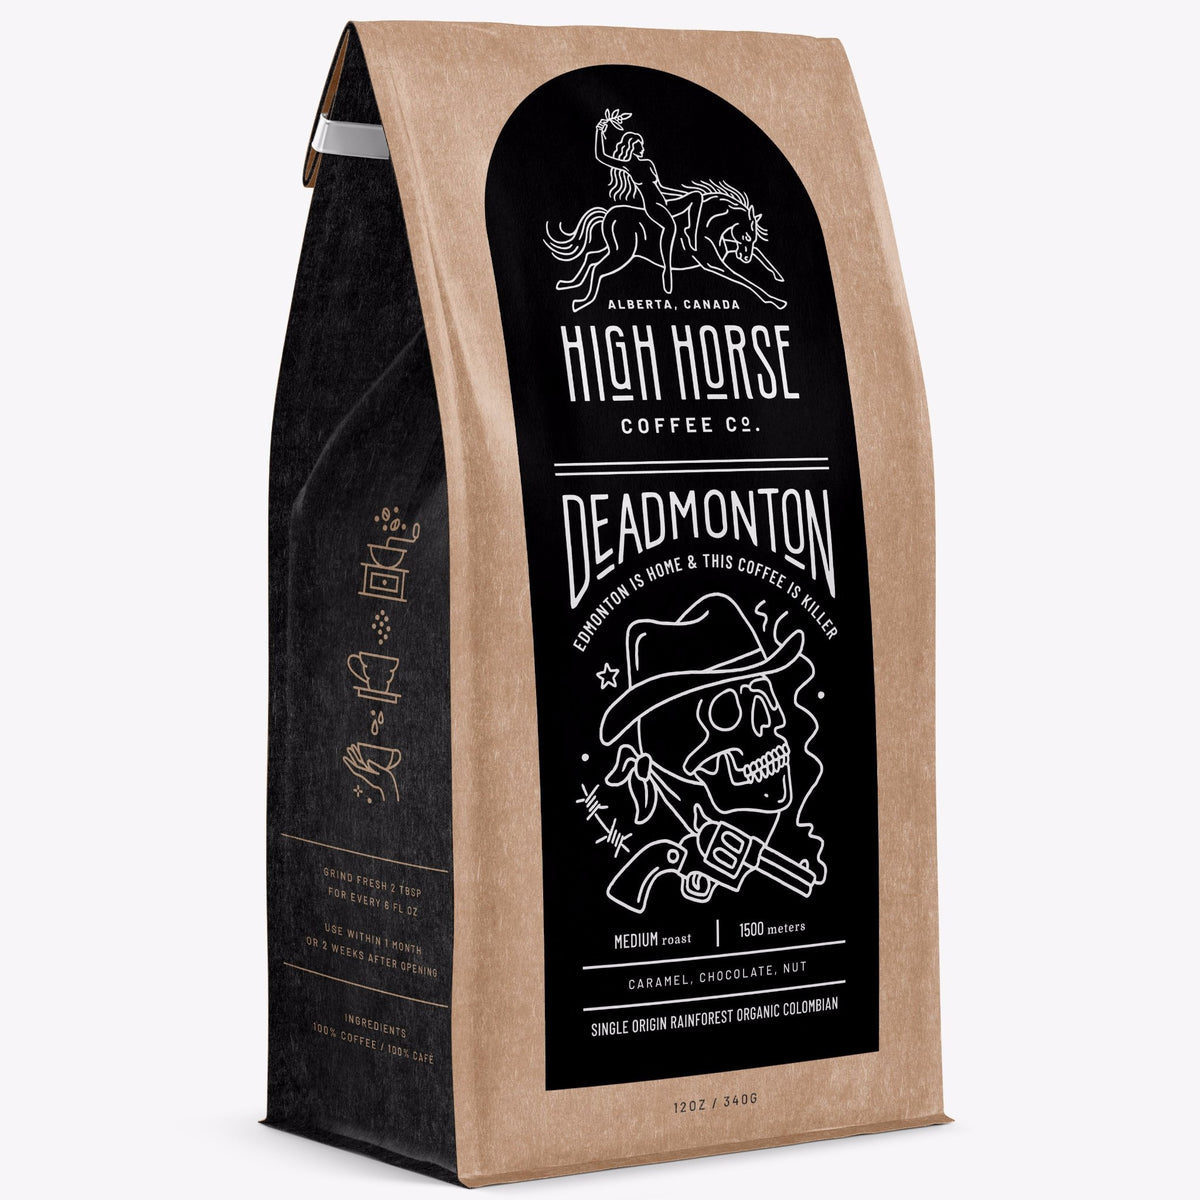 High Horse Coffee Co. - Deadmonton